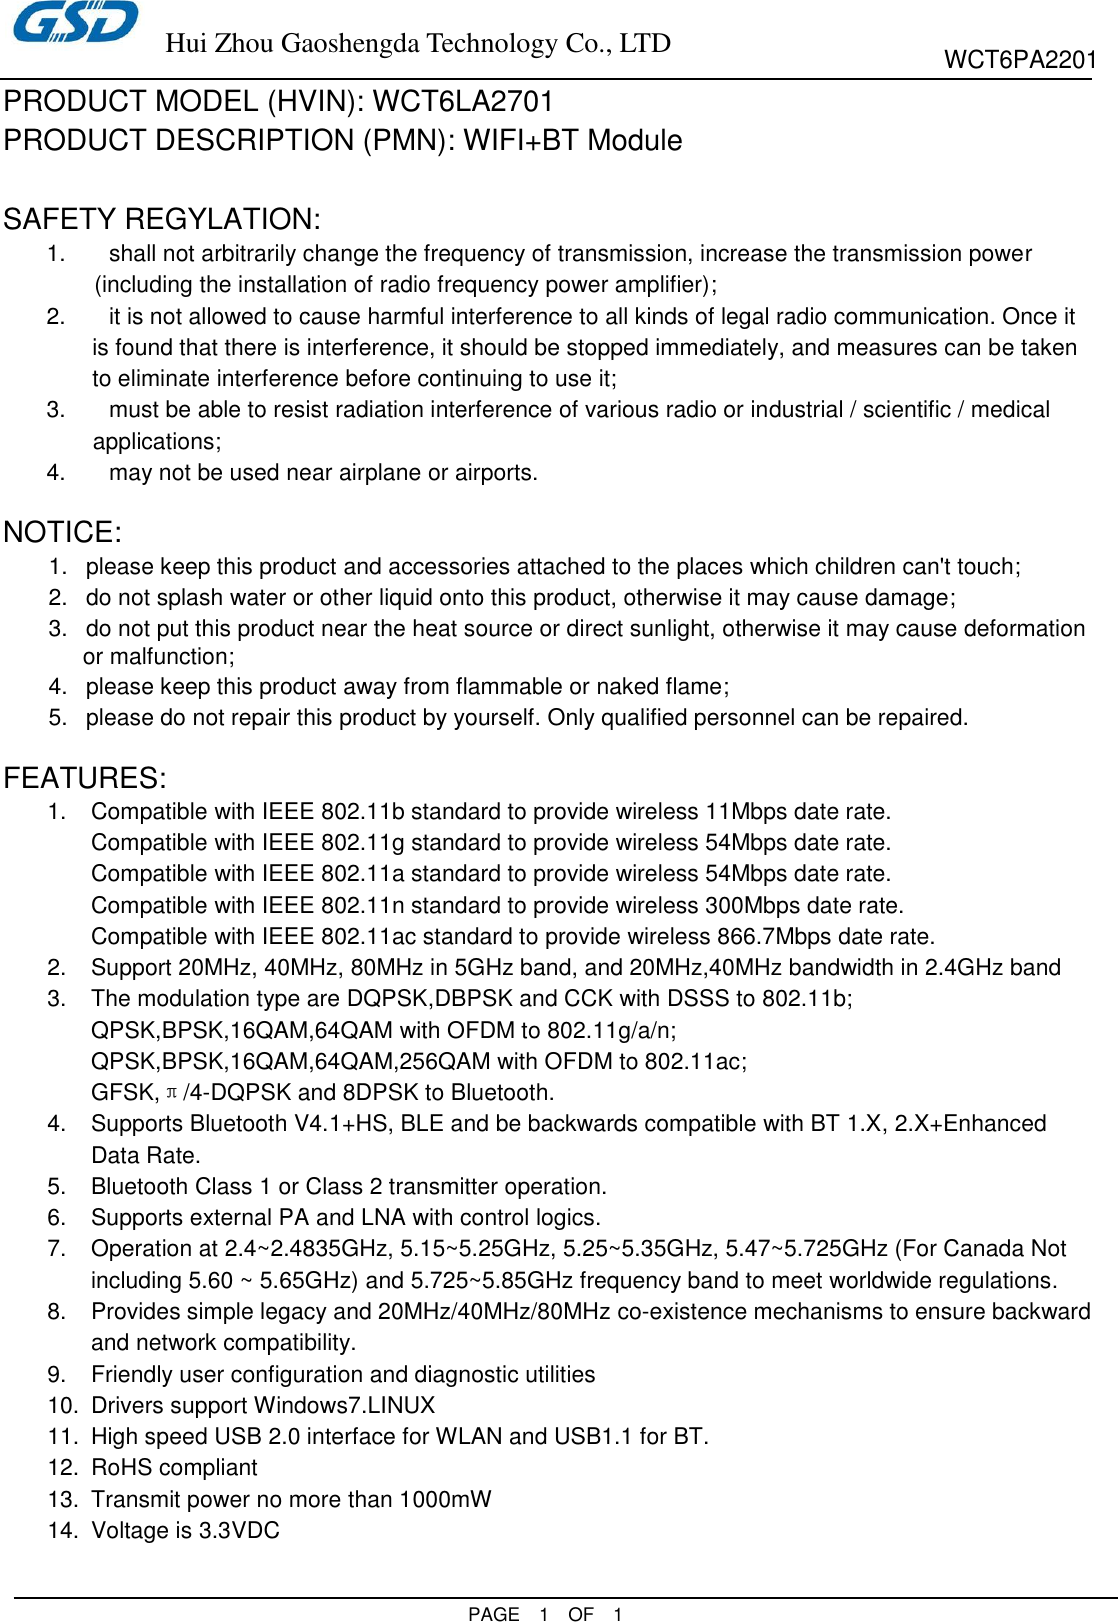 Page 1 of HUIZHOU GAOSHENGDA TECHNOLOGY WCT6LA2701 WIFI+BT Module User Manual